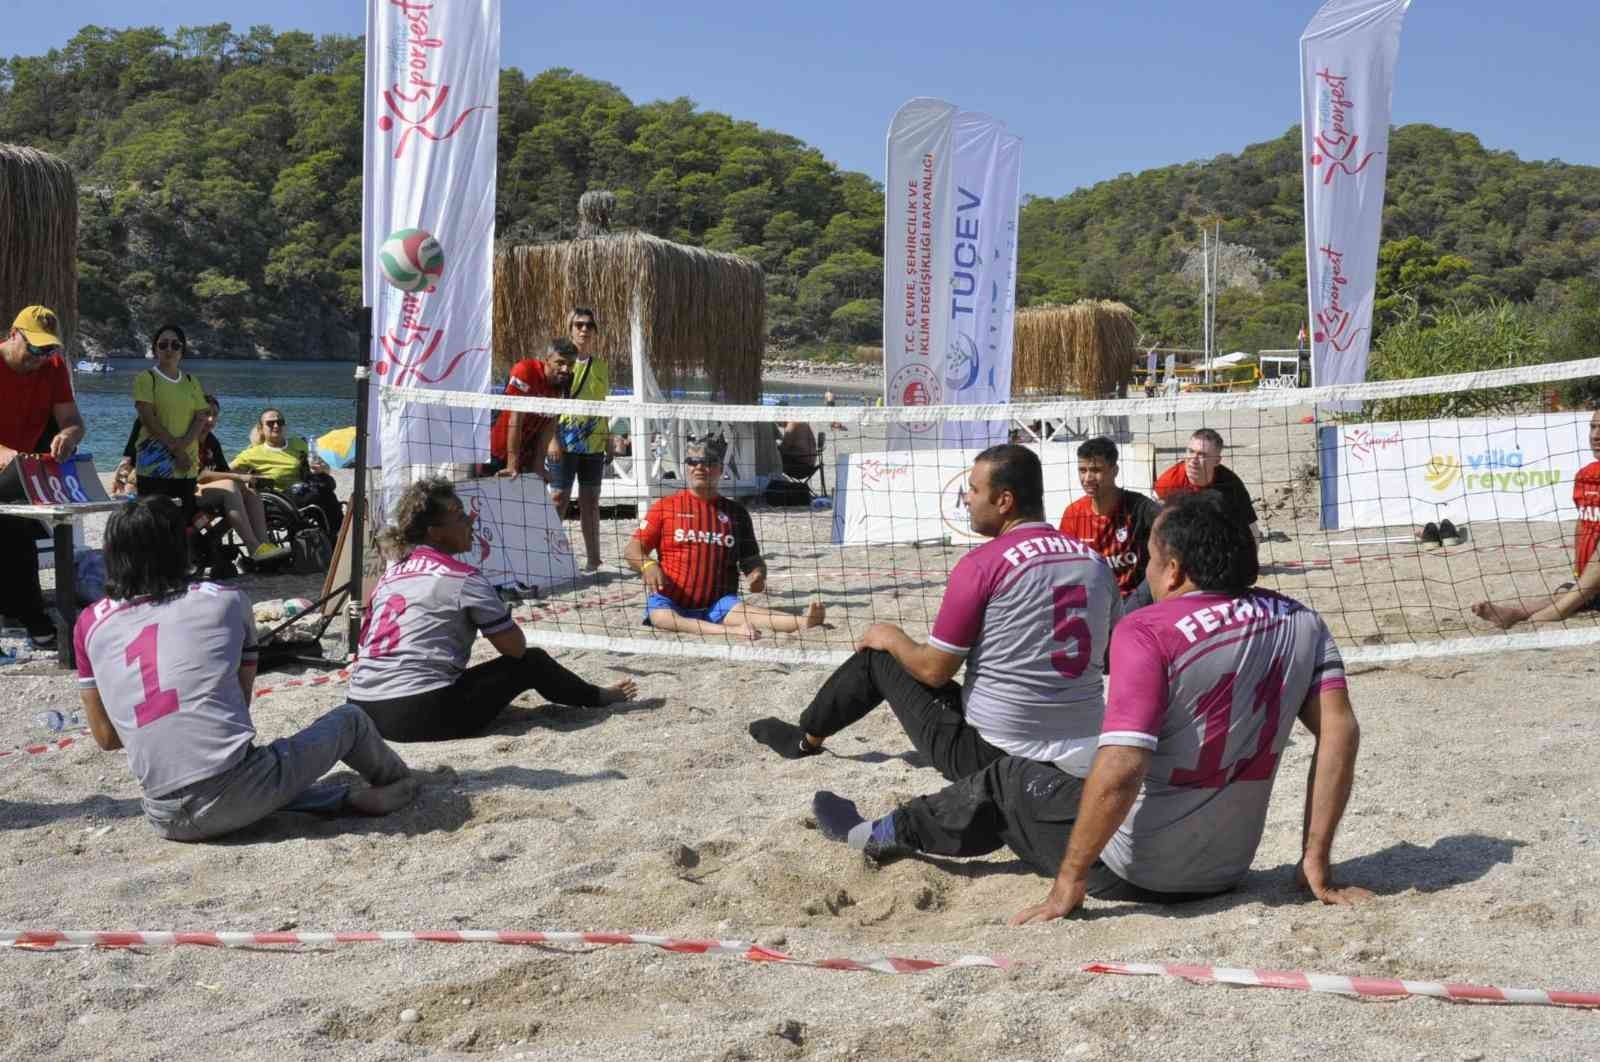 Fethiye’de 3. Spor Festivali Açık Su Yüzme Yarışı yapıldı